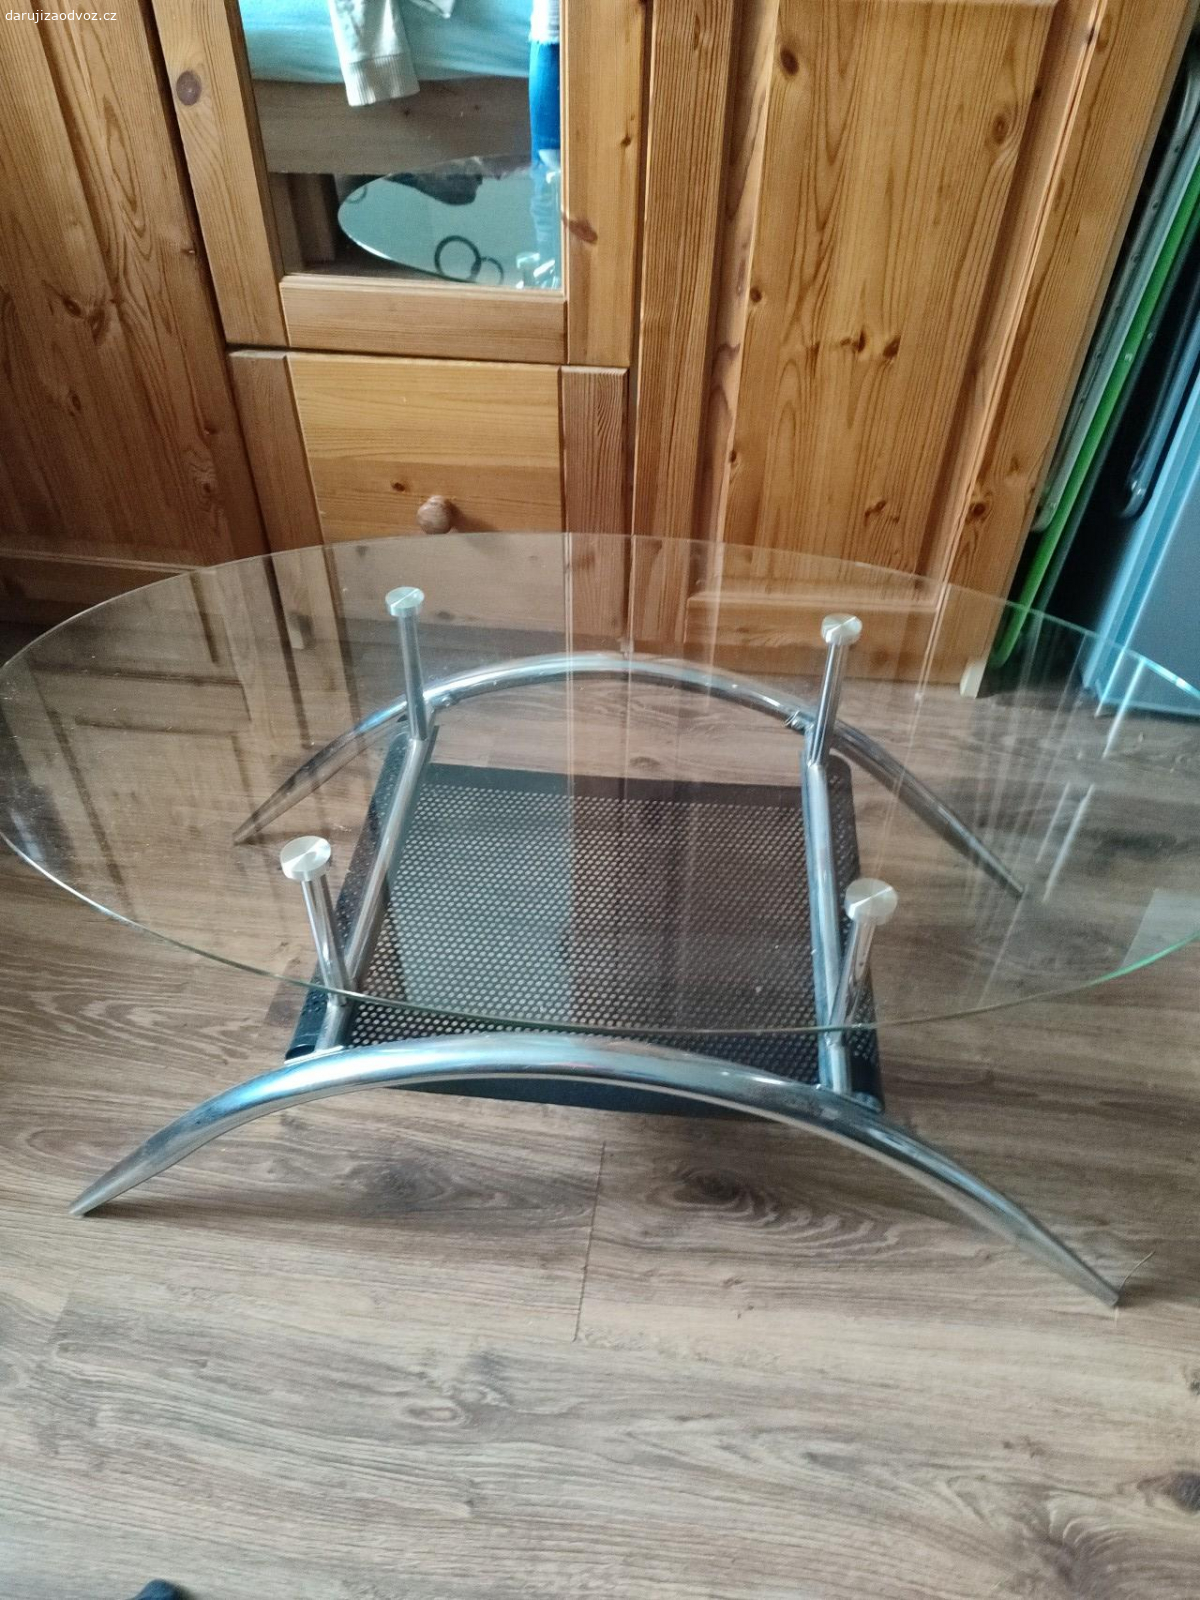 Daruji oválný konferenční stolek. Stolek sklo+ hliník. Nepoškozený.
Výška 40cm, rozměry skla 100x60 cm.